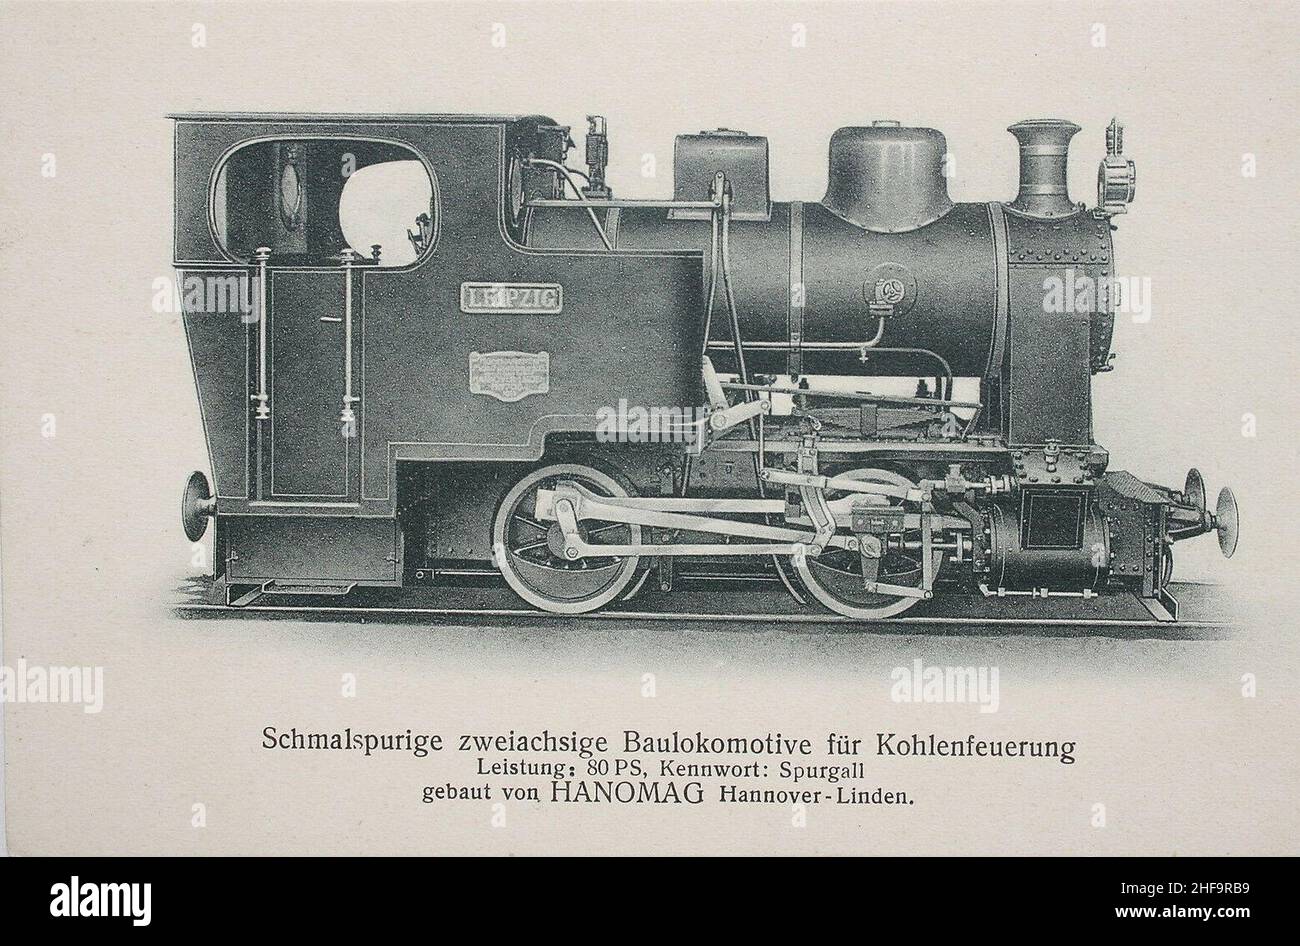 Schmalspurige zweiachsige Baulokomotive für Kohlenfeuerung, Leistung 80 PS, Kennwort Spurgall, gebaut von Hanomag, Hannover Linden. Stock Photo